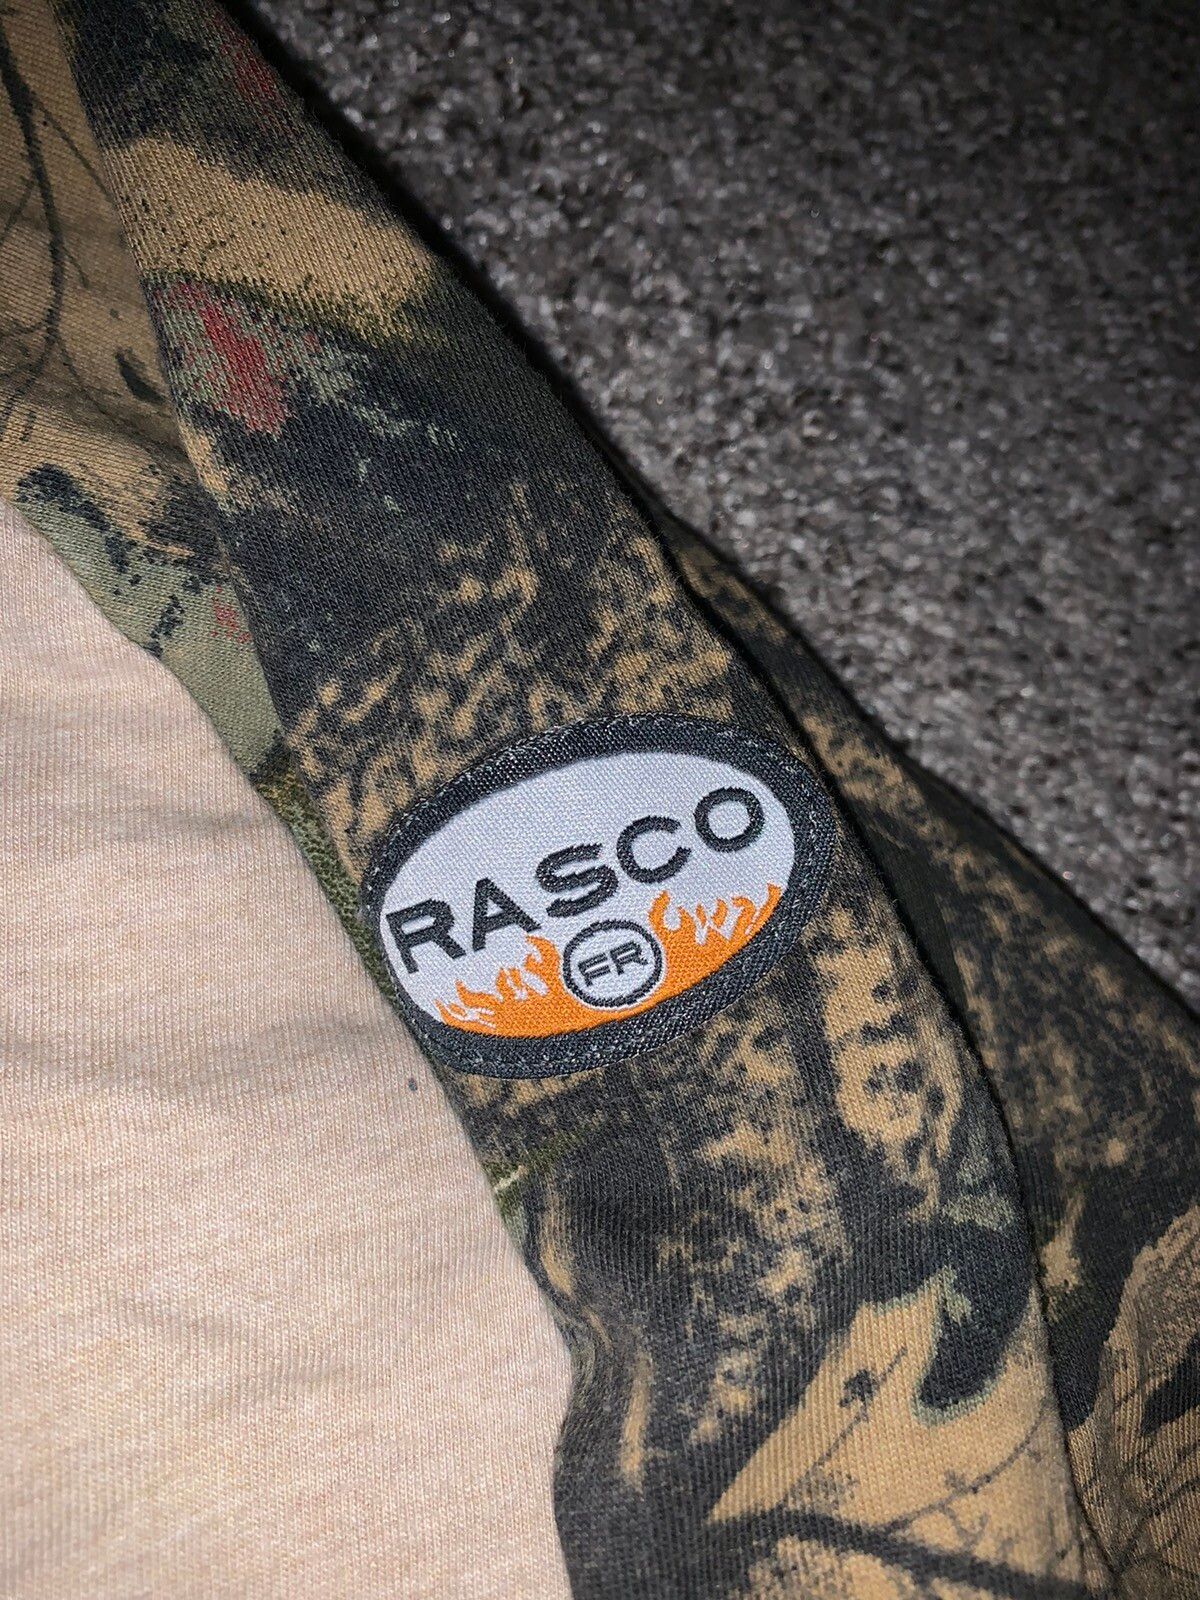 Vintage Rasco Camo Button Up Long Sleeve Size US XL / EU 56 / 4 - 3 Thumbnail